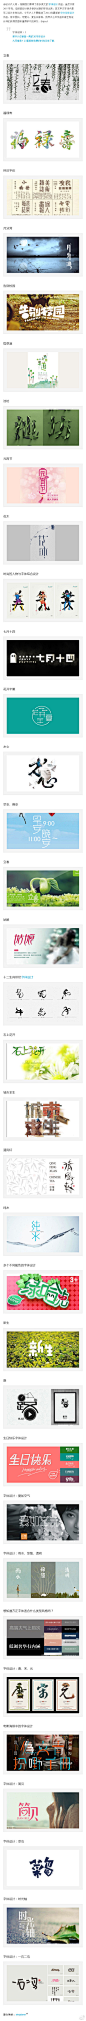 【超赞！35个风格迥异的中文字体设计作品欣赏】@设计达人网 中文字体可以设计多样化的，今天达人主要精选了2013年最新的中文字体设计作品，有中国风、可爱风、复古风等等，我想这么些作品中肯定有设计师们获得灵感和值得学习的地方，Enjoy！→http://t.cn/z8DWVF9